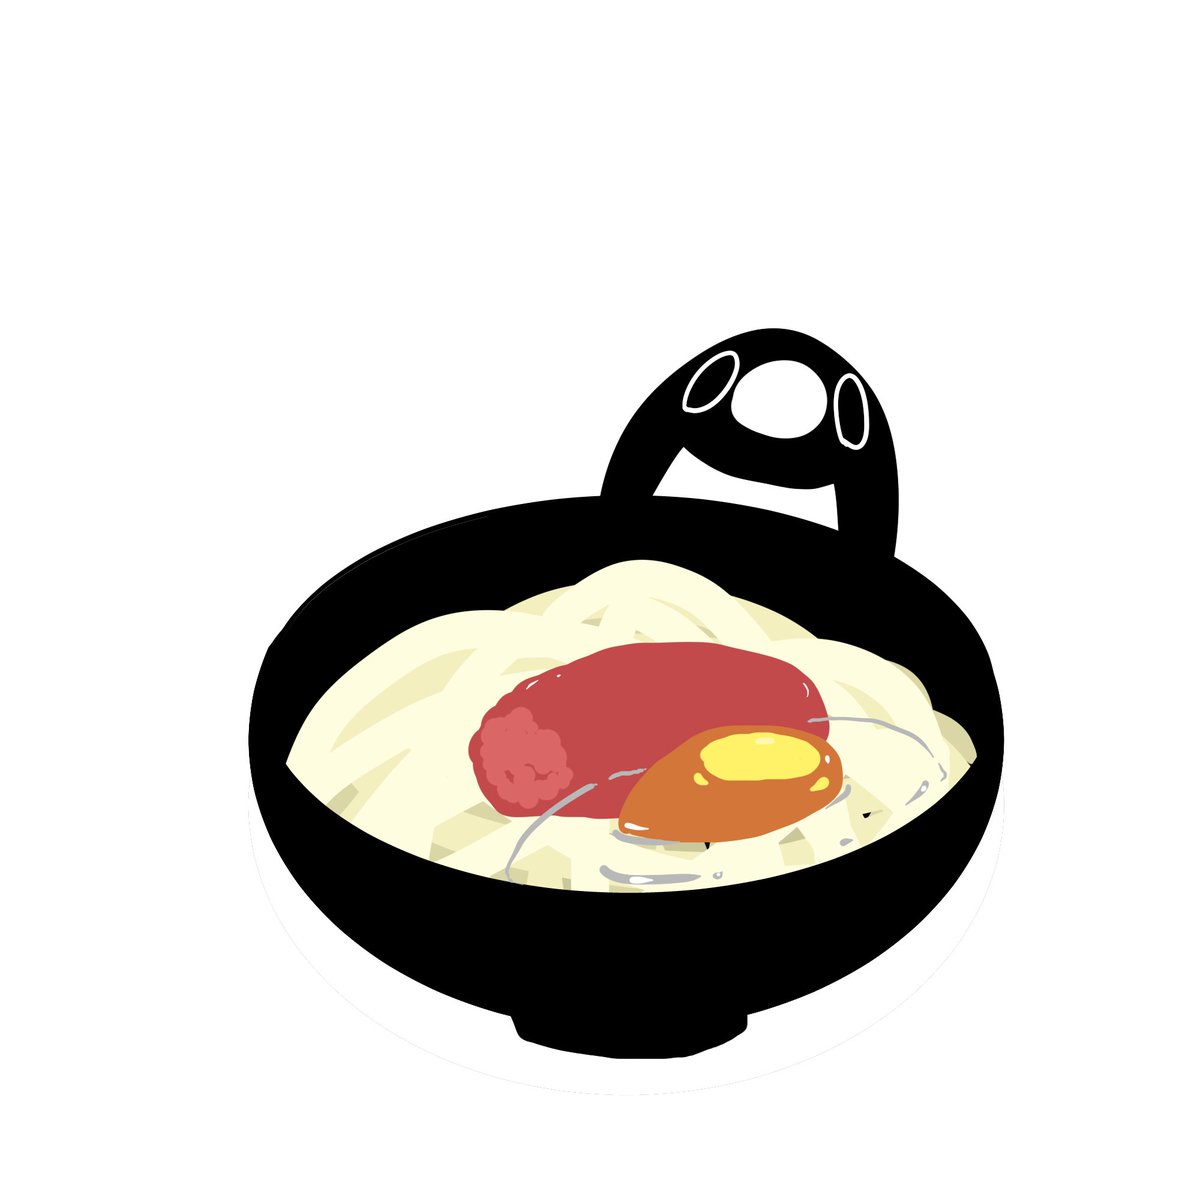 no humans food food focus white background simple background egg (food) fried egg  illustration images